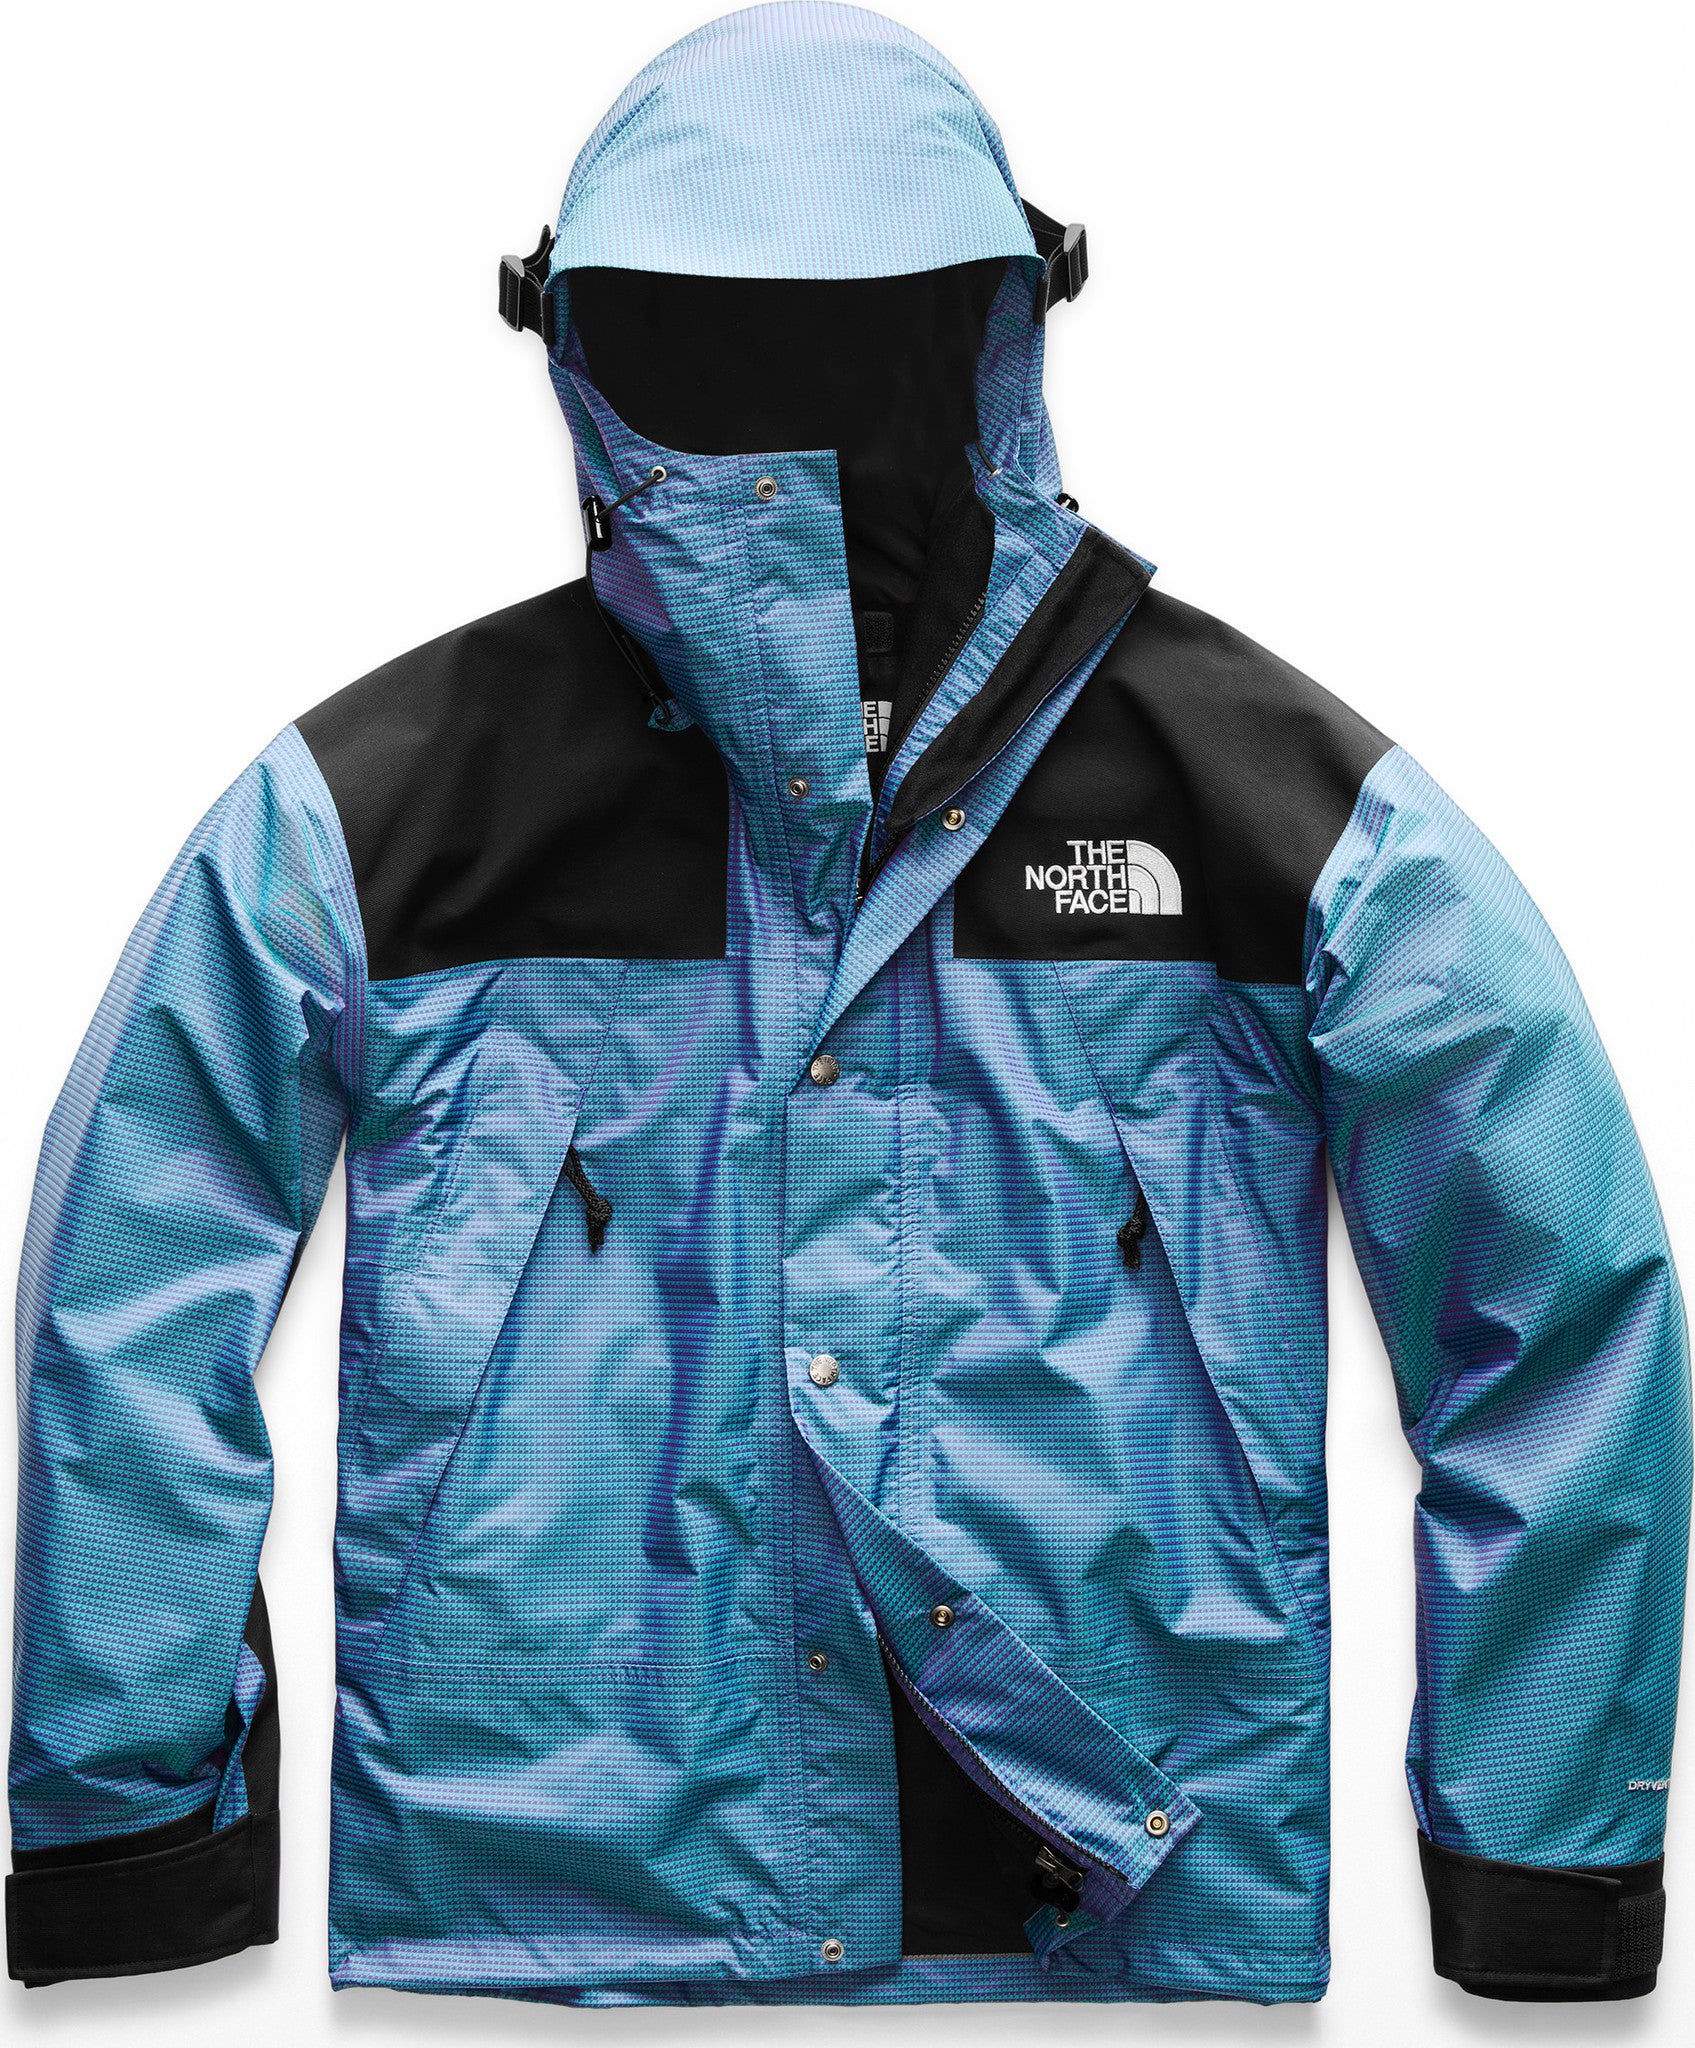 1990 seasonal mountain jacket iridescent